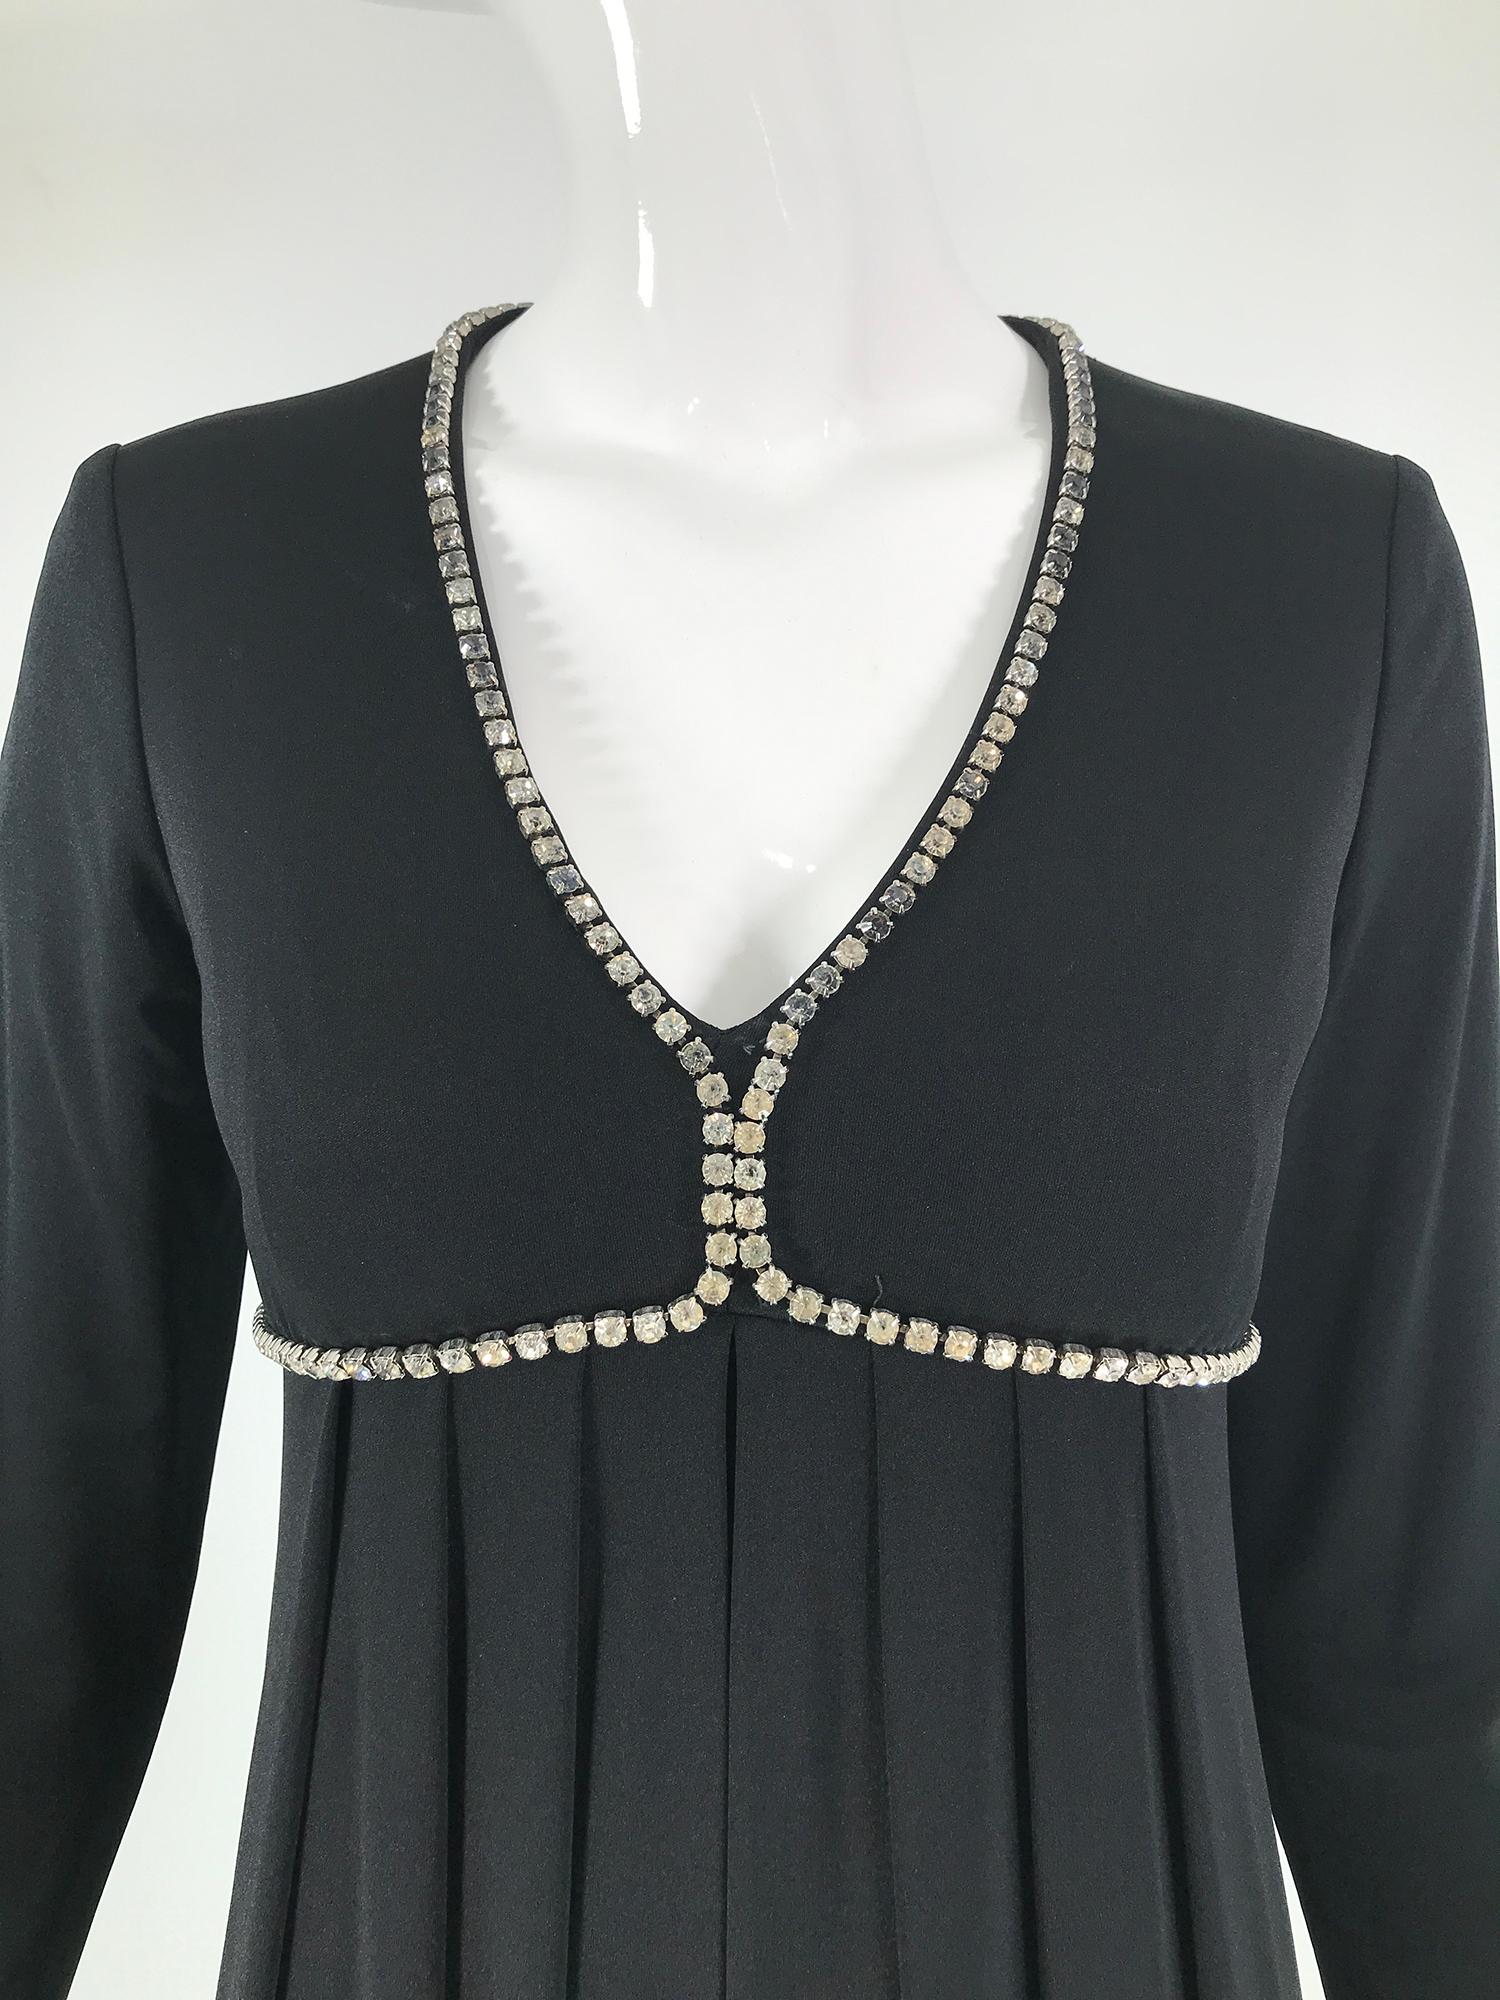 1970er Jahre Kristall Strassbesetztes schwarzes Jersey V-Ausschnitt Maxikleid. Schlankes Kleid, dessen Büste mit Strasssteinen in Zackenfassung umrahmt ist. Das Kleid hat eine Empire-Taille, der Rock ist unter der Büste leicht gerafft und fällt